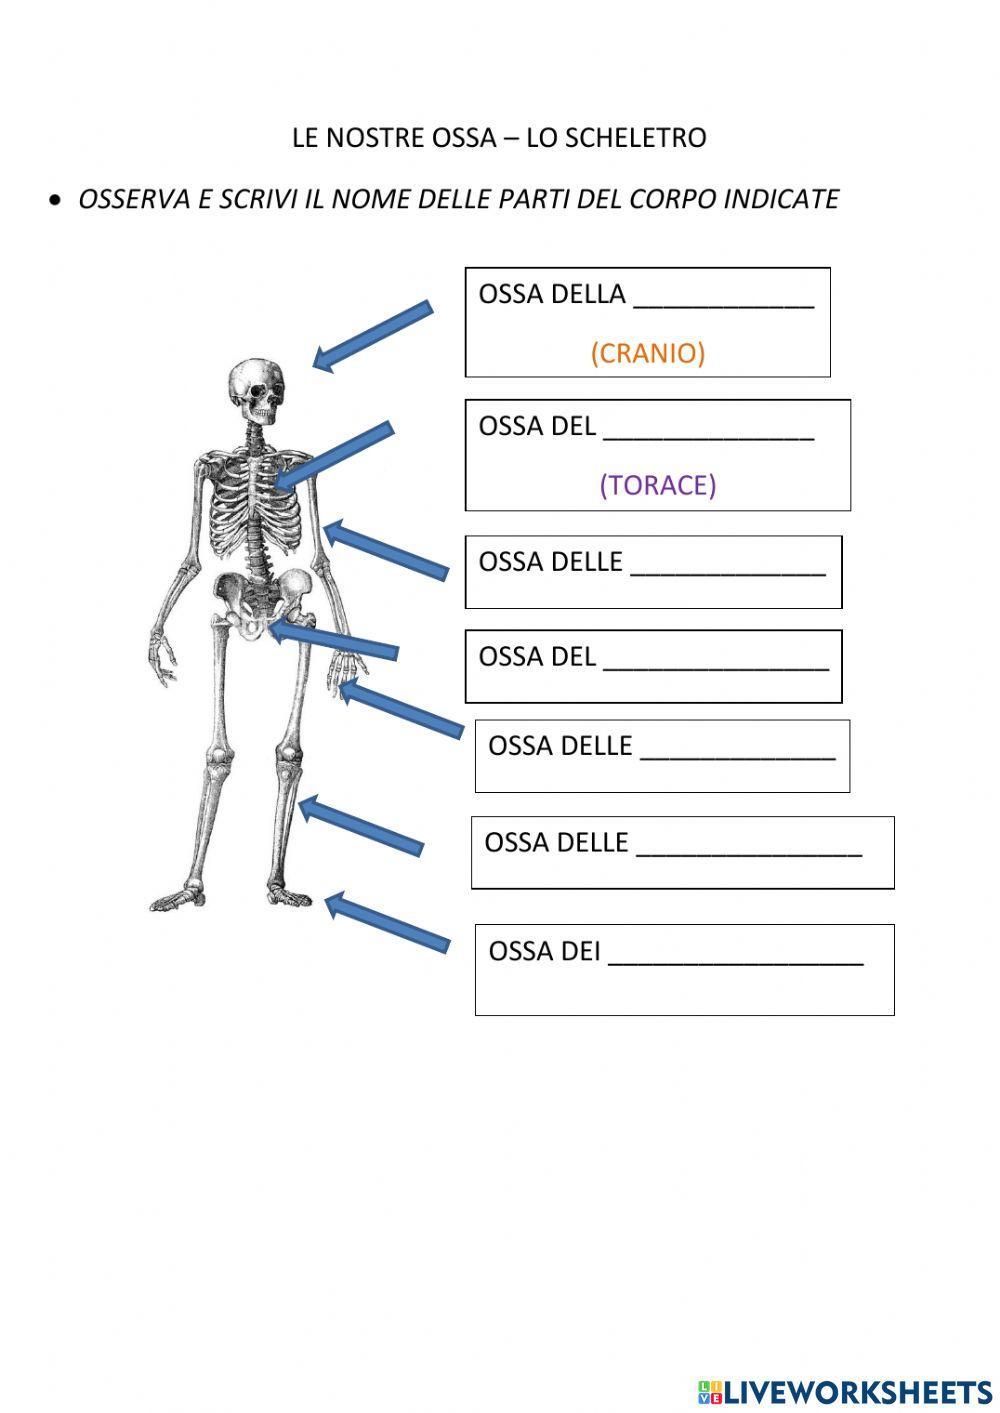 Lo scheletro